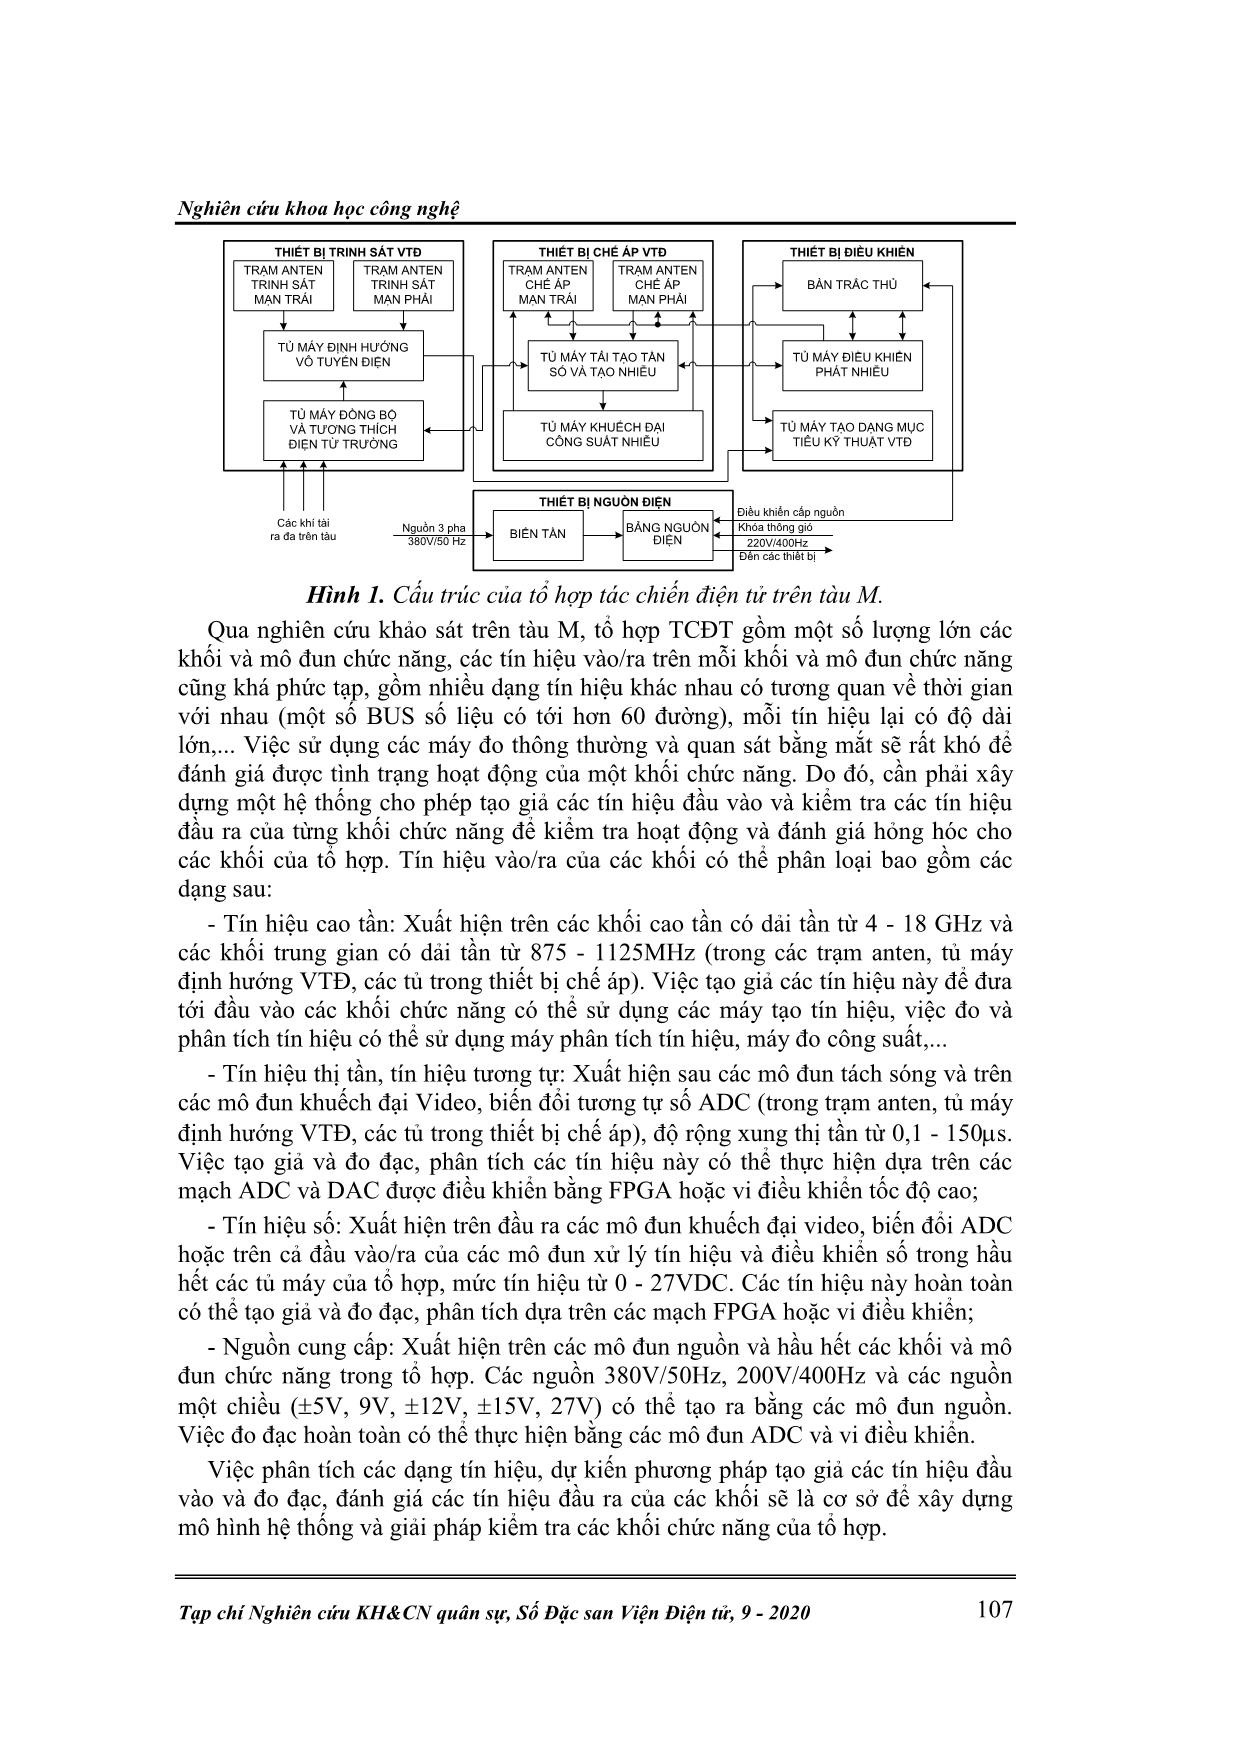 Giải pháp kiểm tra một số khối chức năng trong tổ hợp tác chiến điện tử trên tàu M sử dụng phương pháp phân tích tương quan trang 2